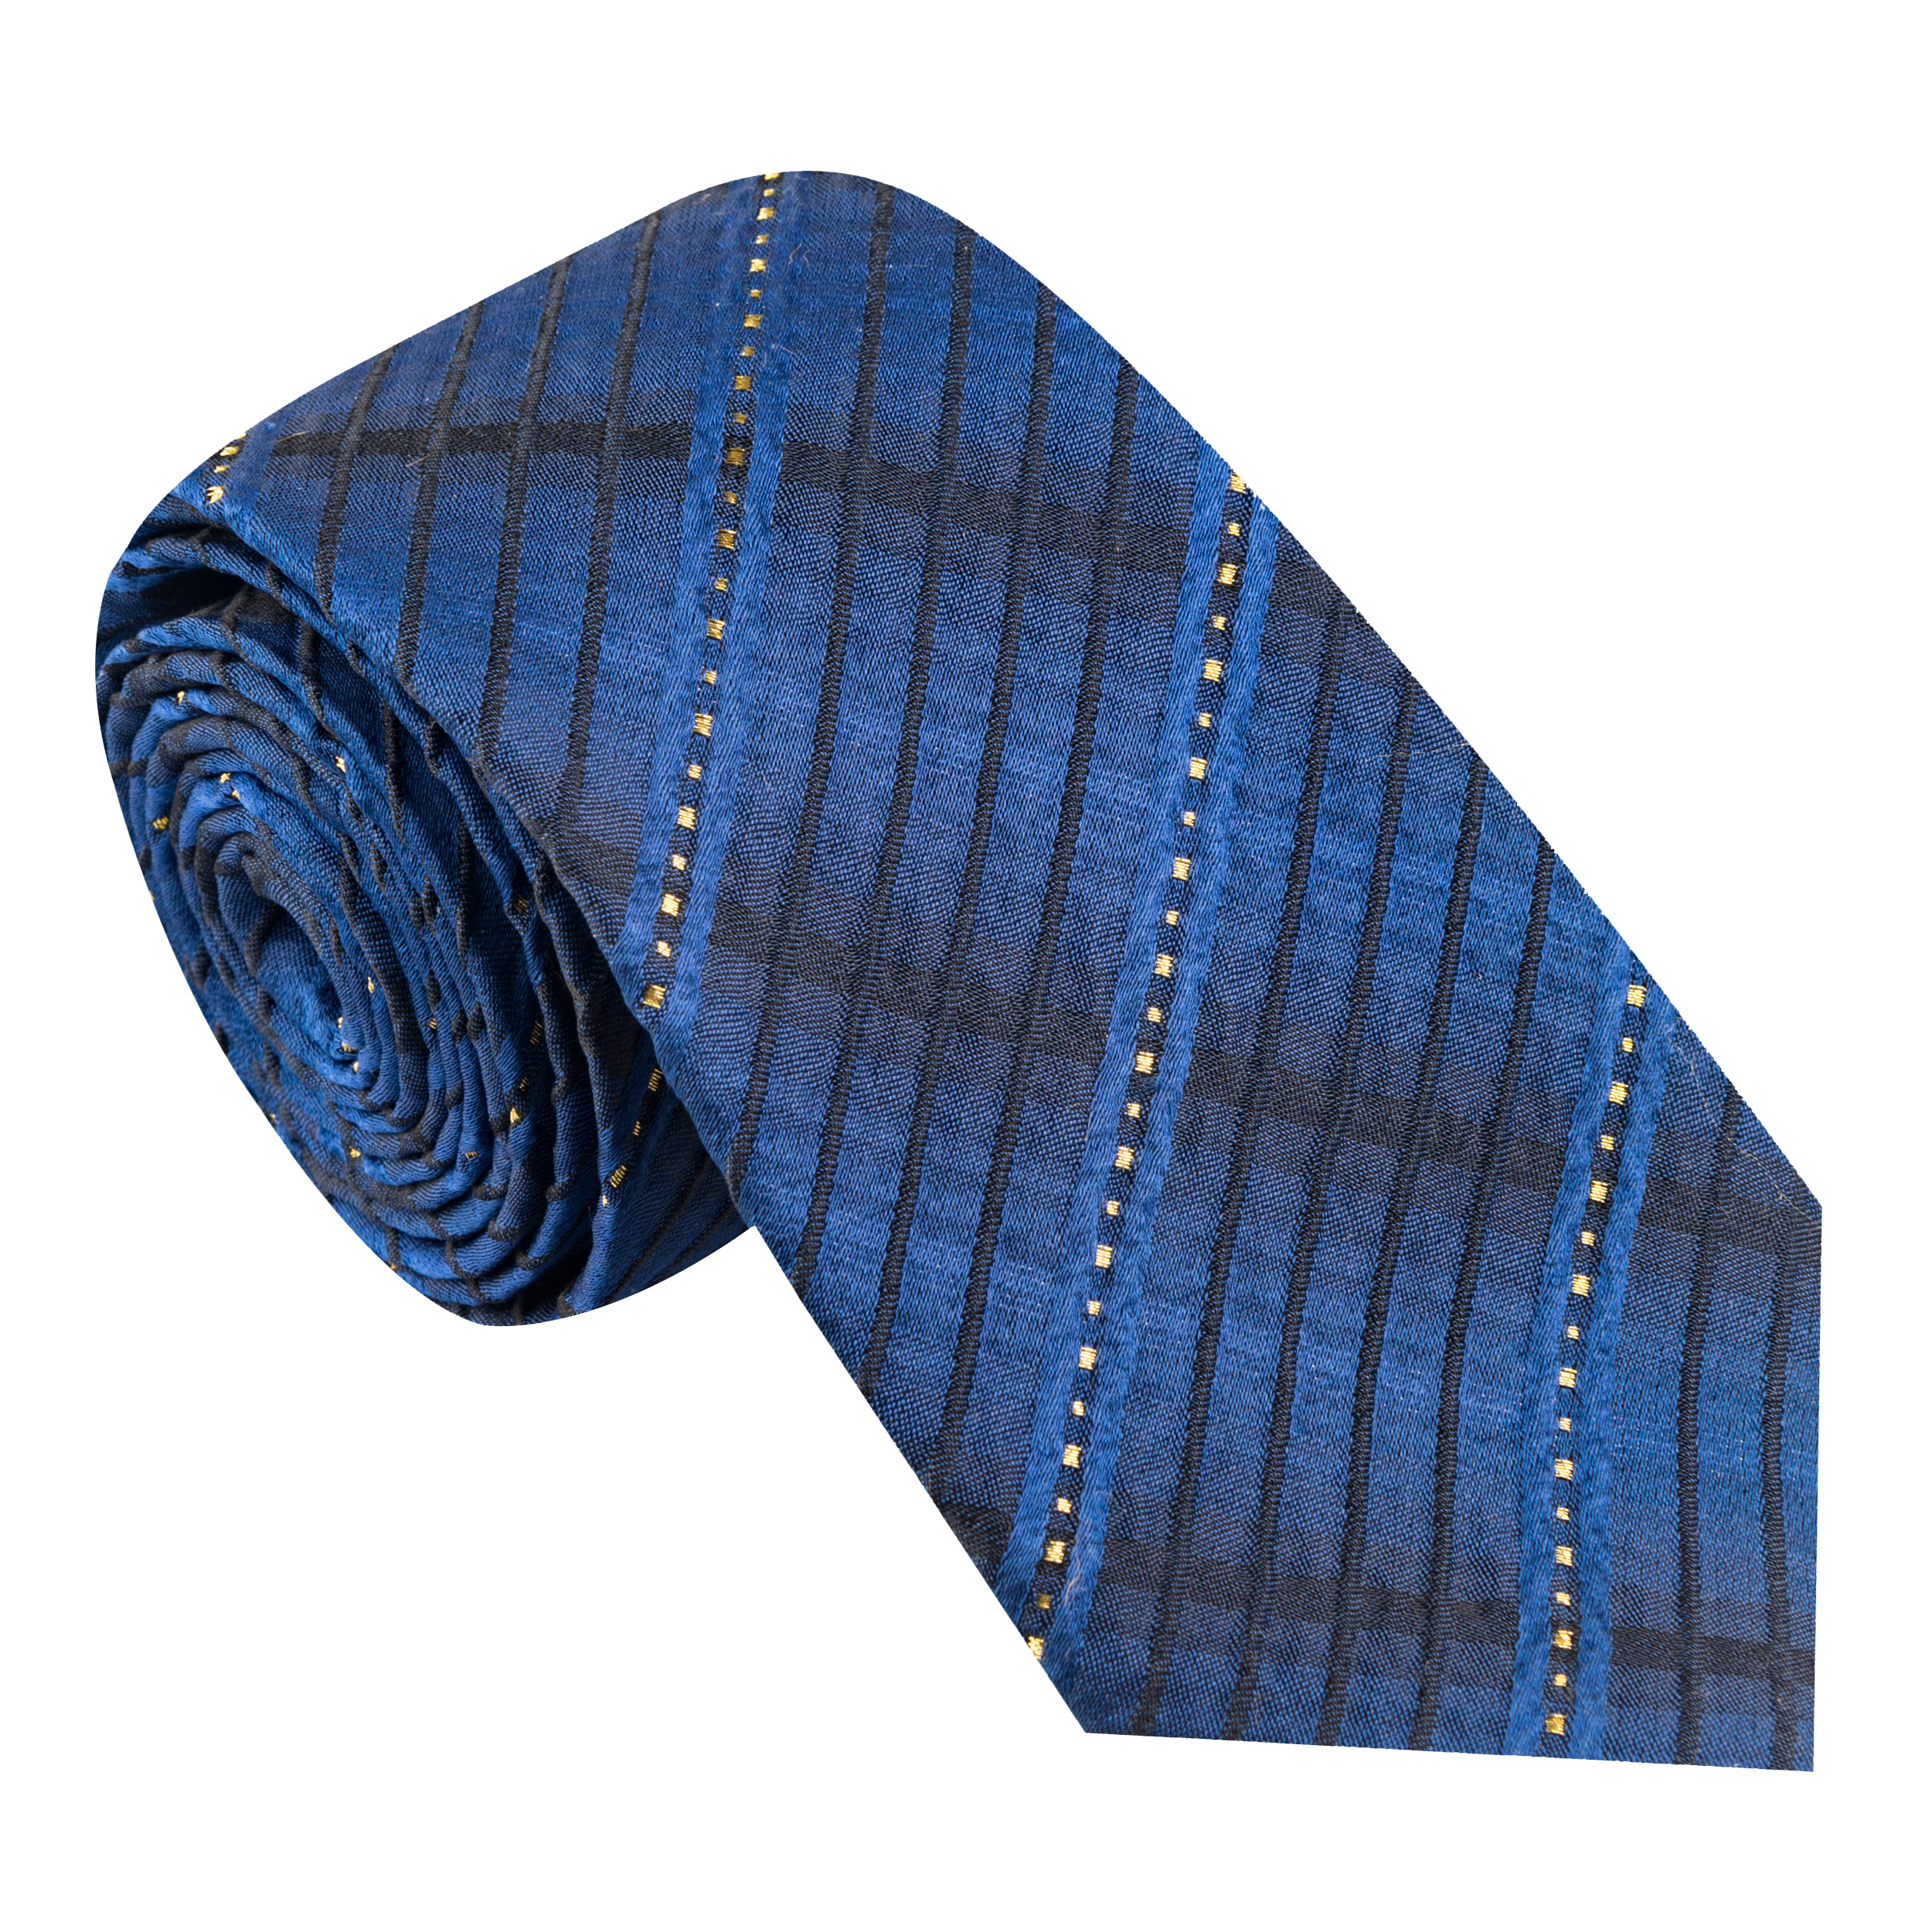  کراوات مردانه جیان فرانکو روسی مدل GF-ST496-BL